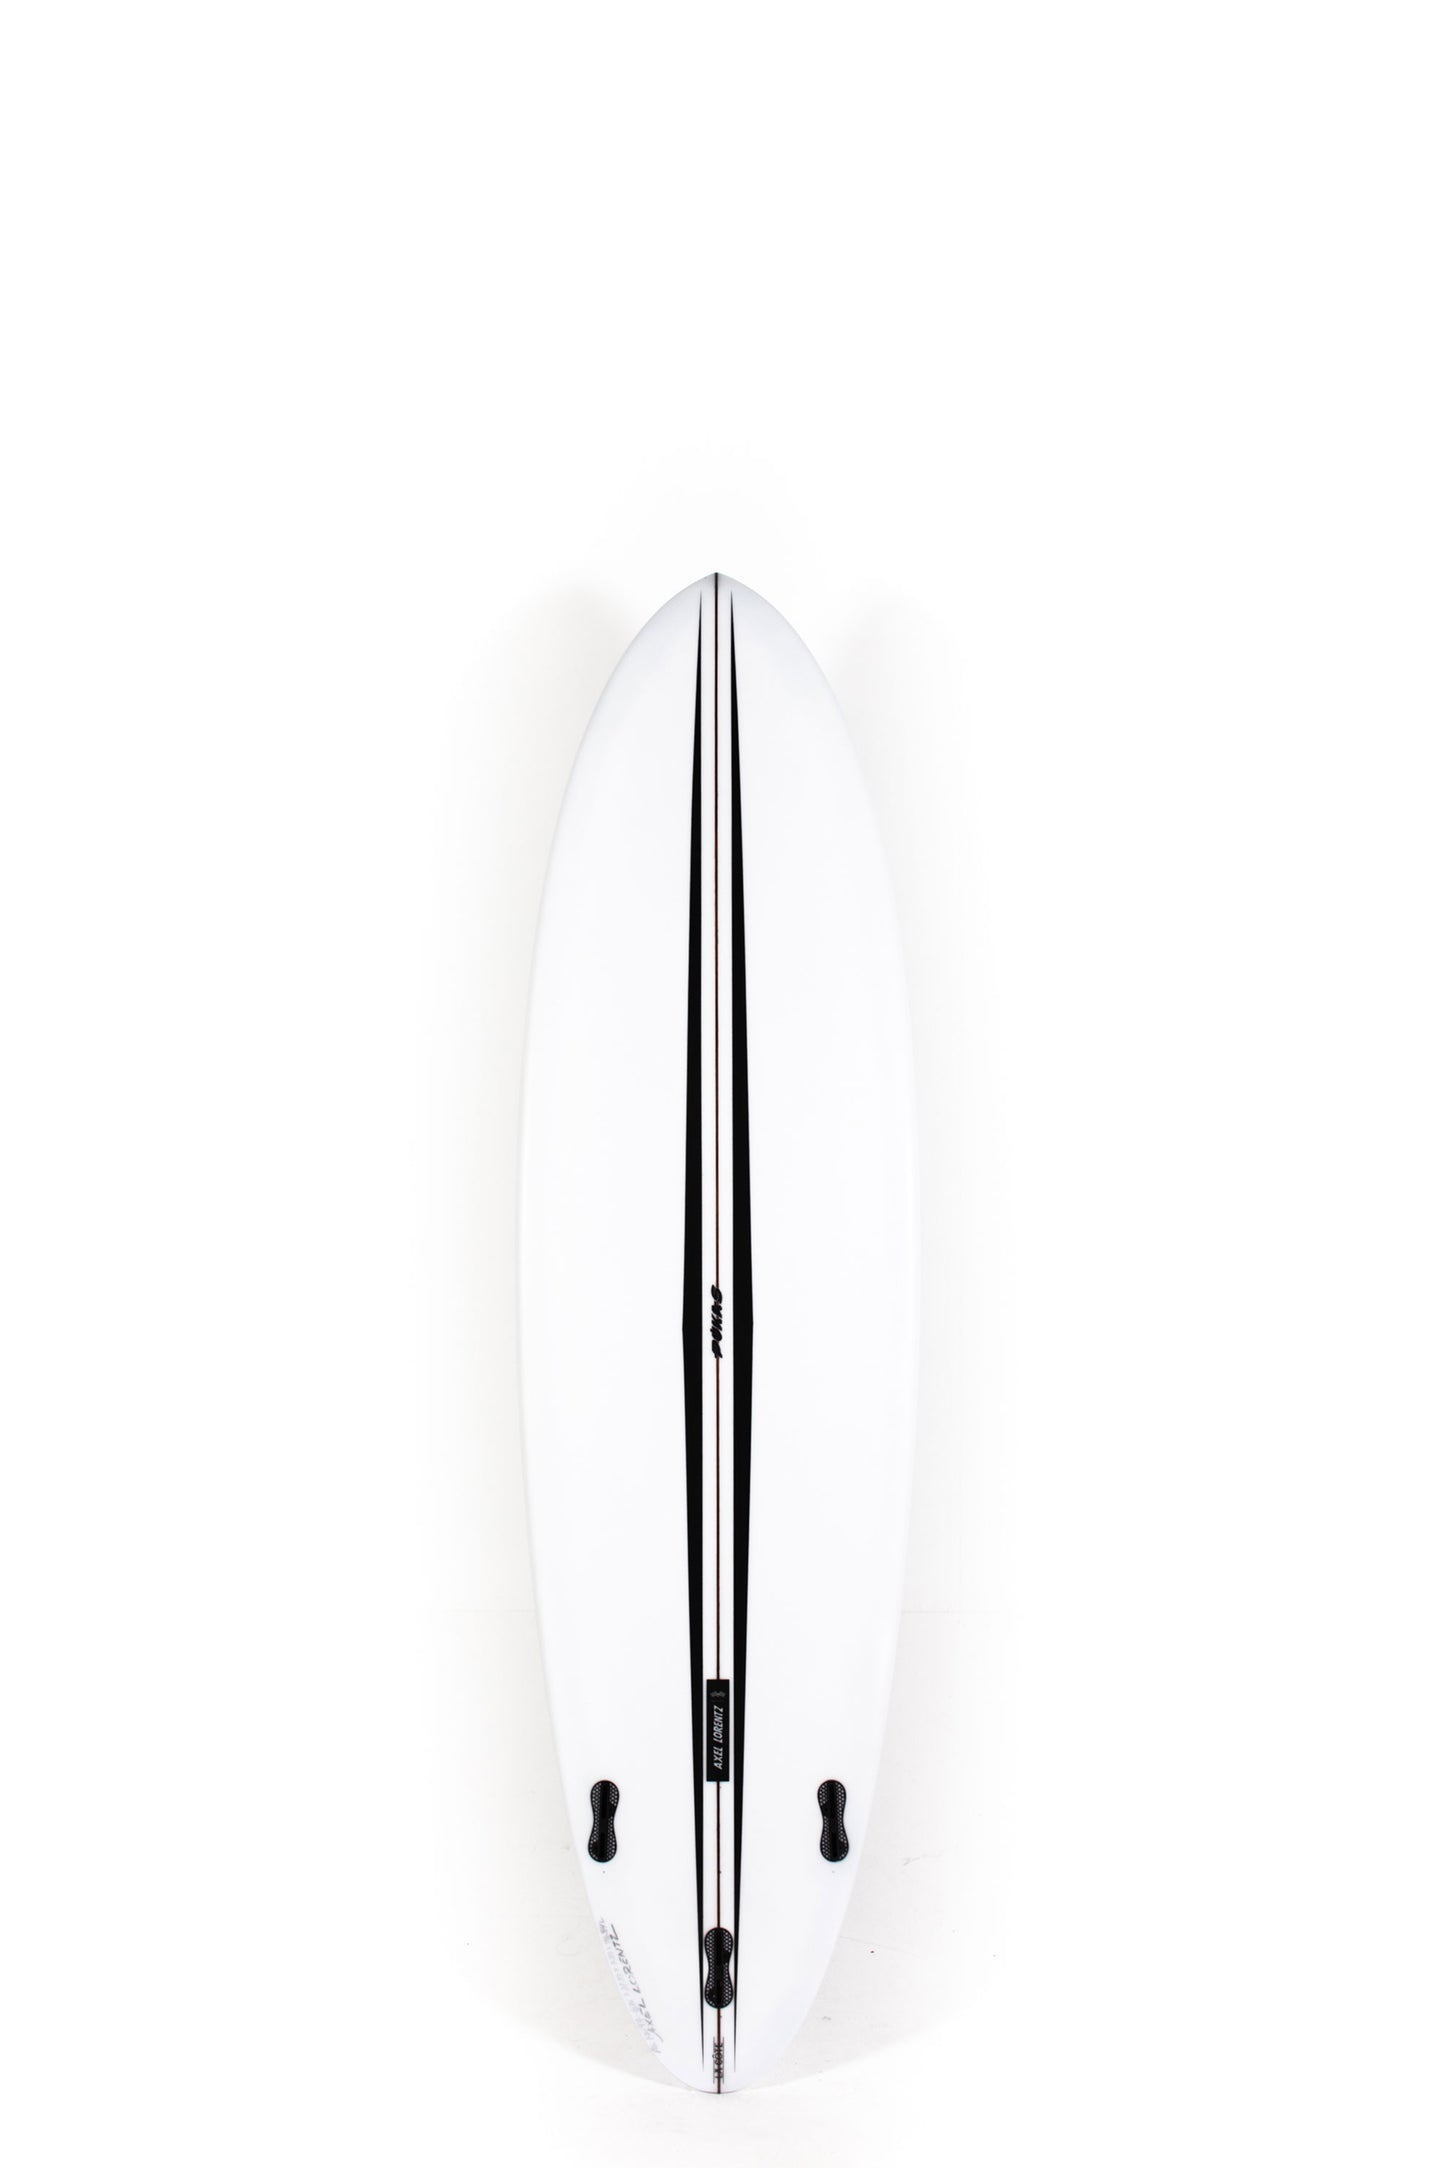 Pukas-Surf-Shop-Pukas-Surfboards-La-Cote-Axel-Lorentz-6_10